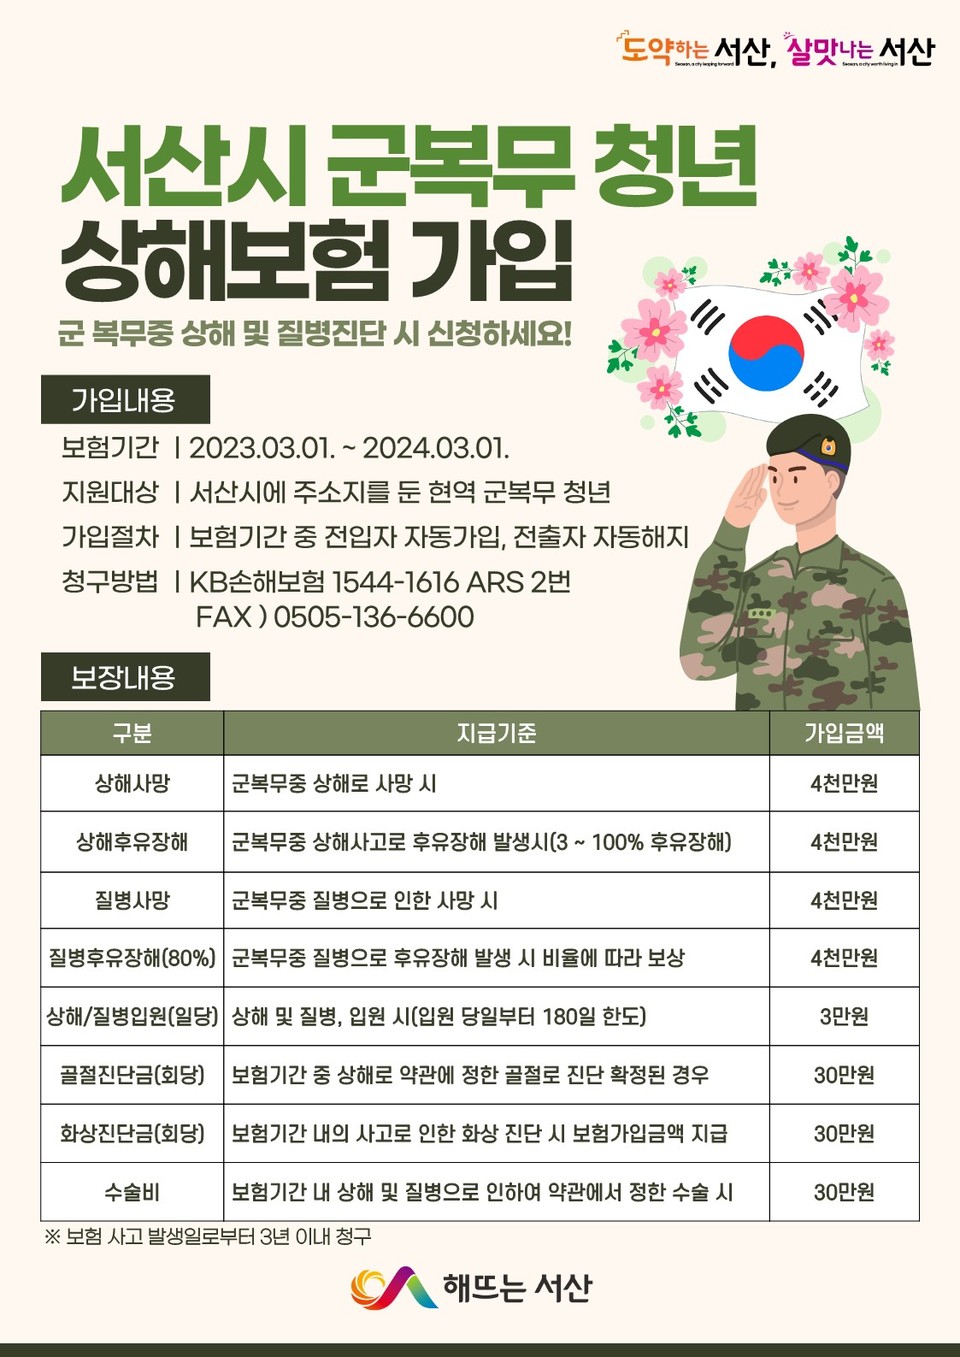 ▲ 서산시의 군복무 청년 상해보험 안내 홍보물.